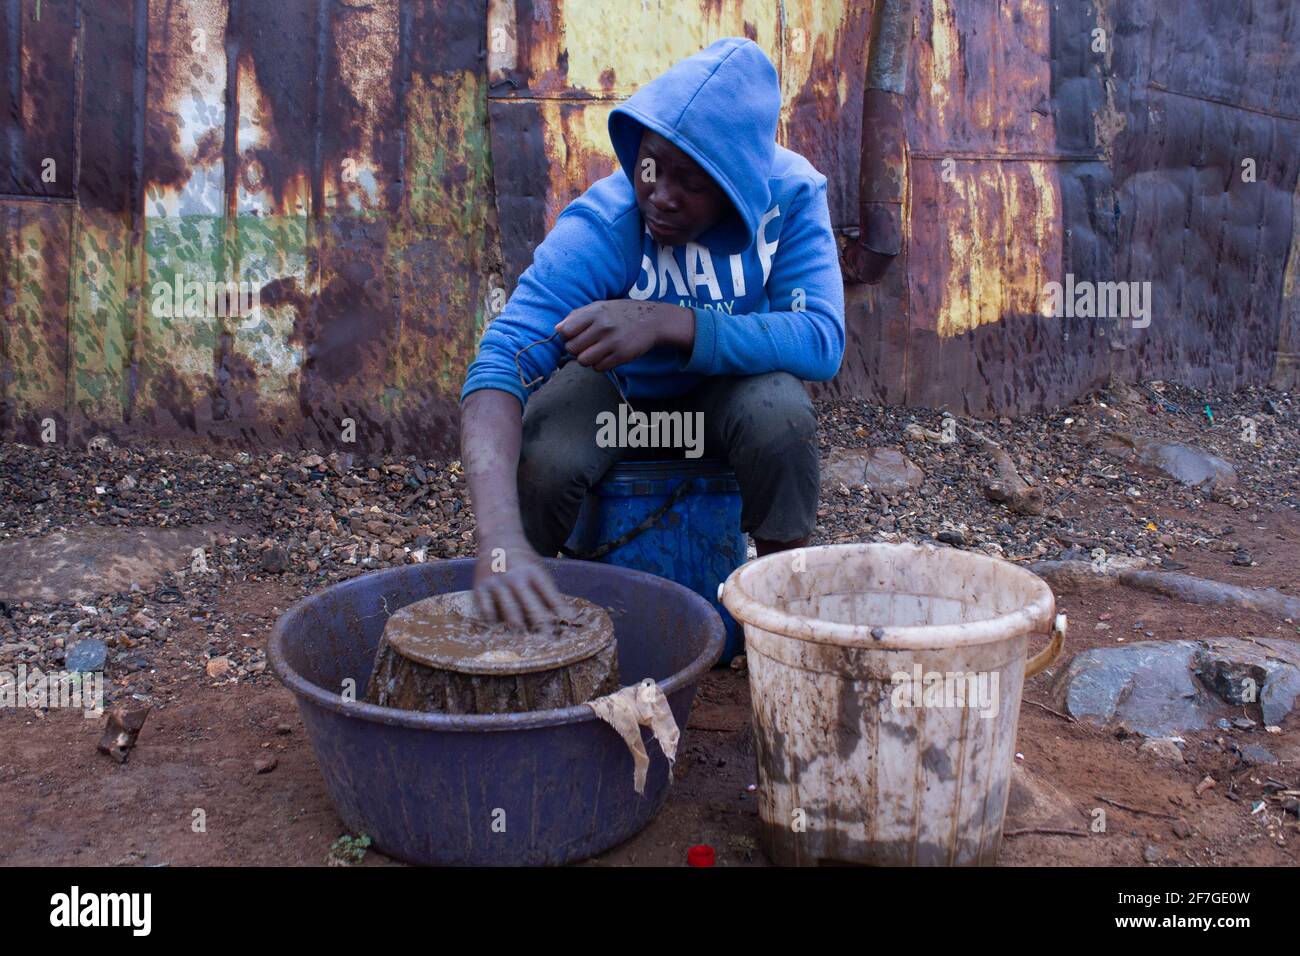 Ein illegaler Goldminer, sobald die Tücher voller Goldstaub sind, wäscht sie am 2. September 2020 vorsichtig in einem Eimer in den Straßen des Townships in Xawela, Carletonville bei Johannesburg, Südafrika. (Foto von Manash das/Sipa USA) Quelle: SIPA USA/Alamy Live News Stockfoto